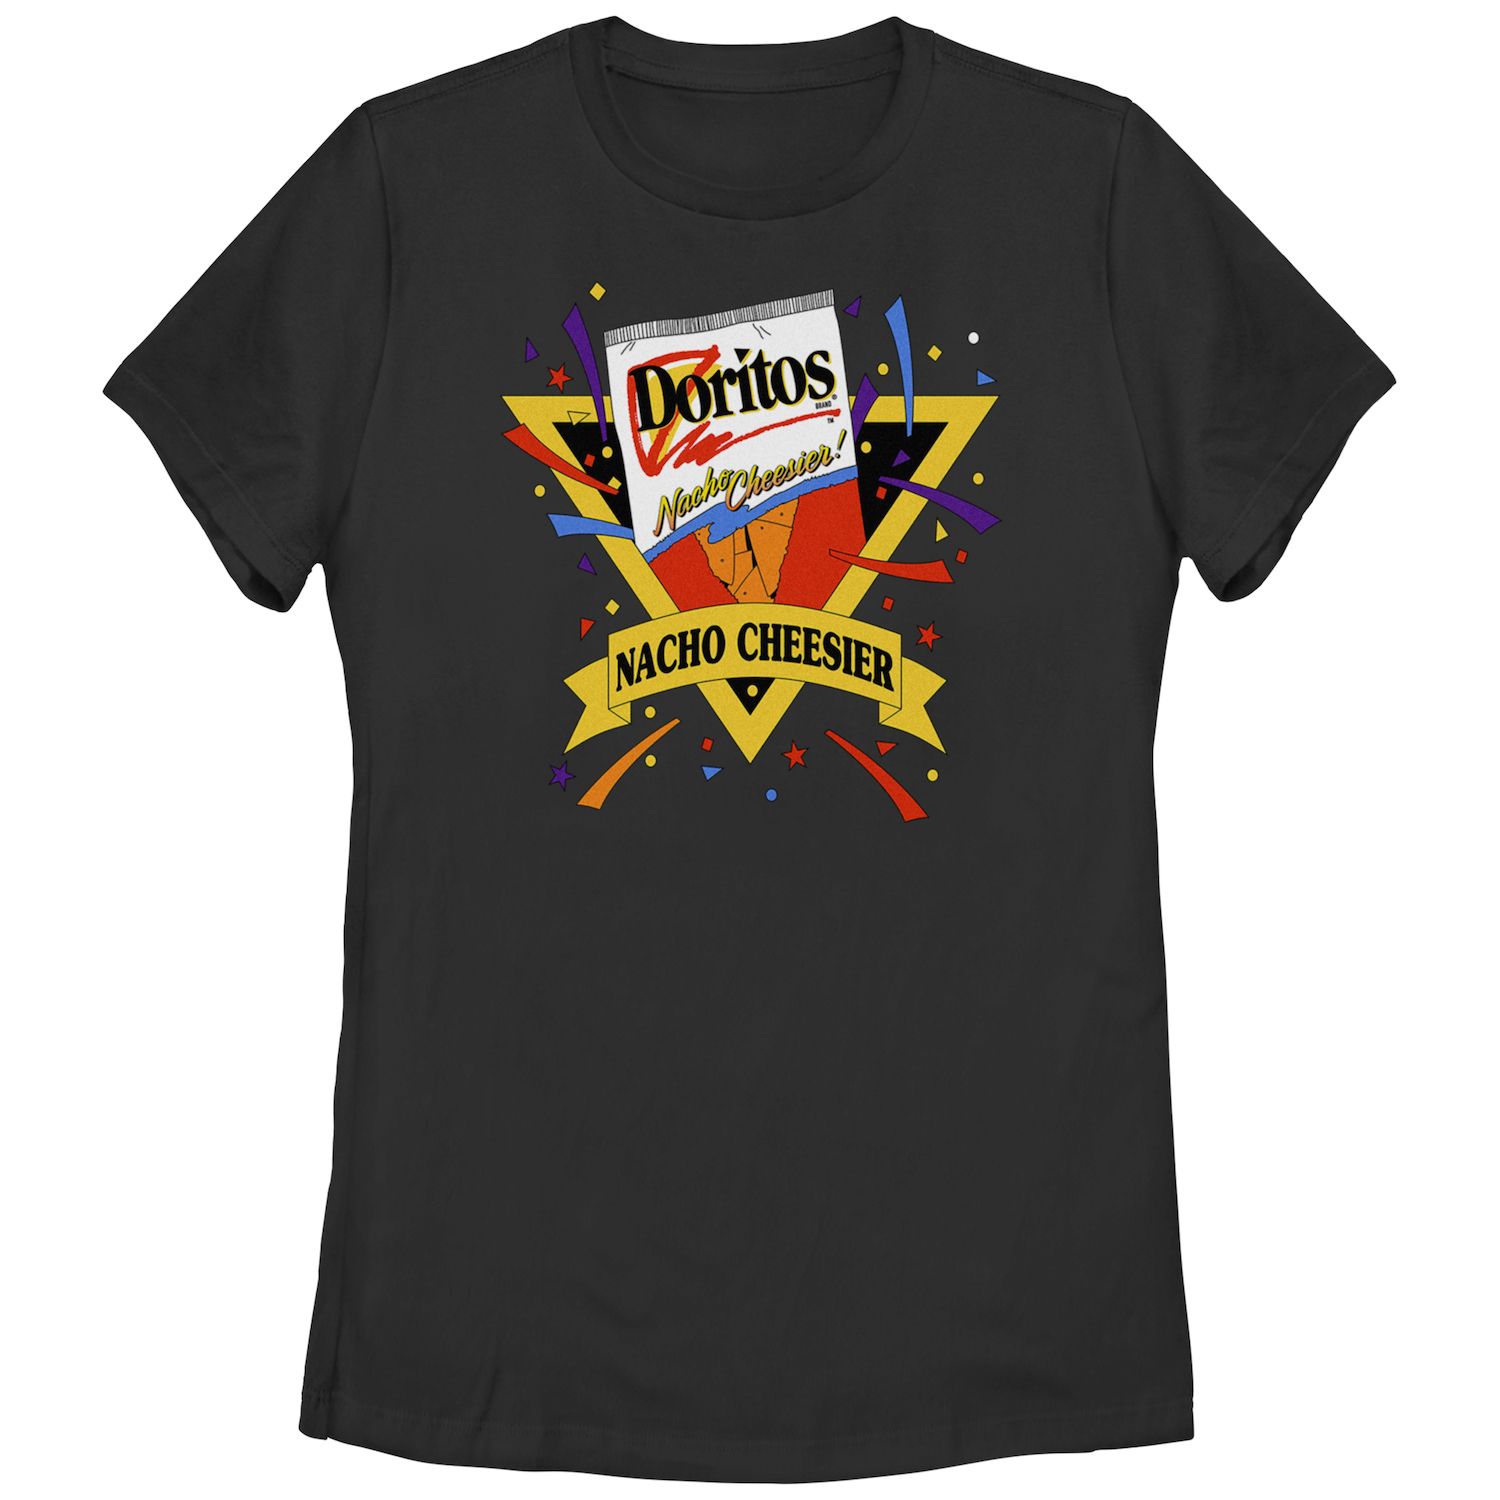 Детская футболка Doritos Nacho Cheesier с винтажным графическим логотипом Doritos doritos nacho cheese 175 gm